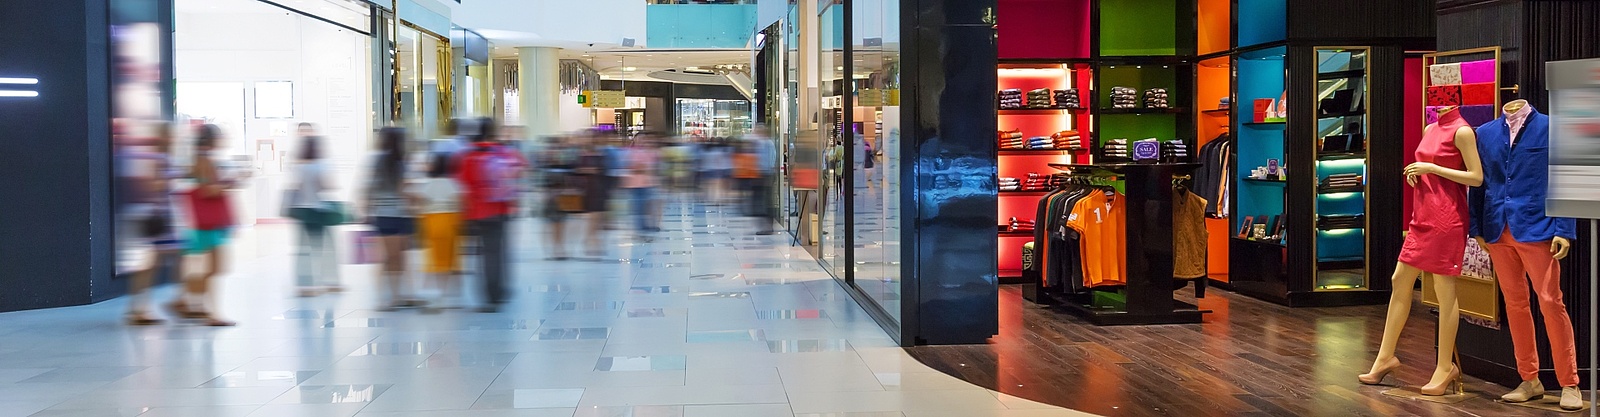 En färgsprakande bild på en klädaffär med öppen yta i ett välbesökt shoppingcenter 